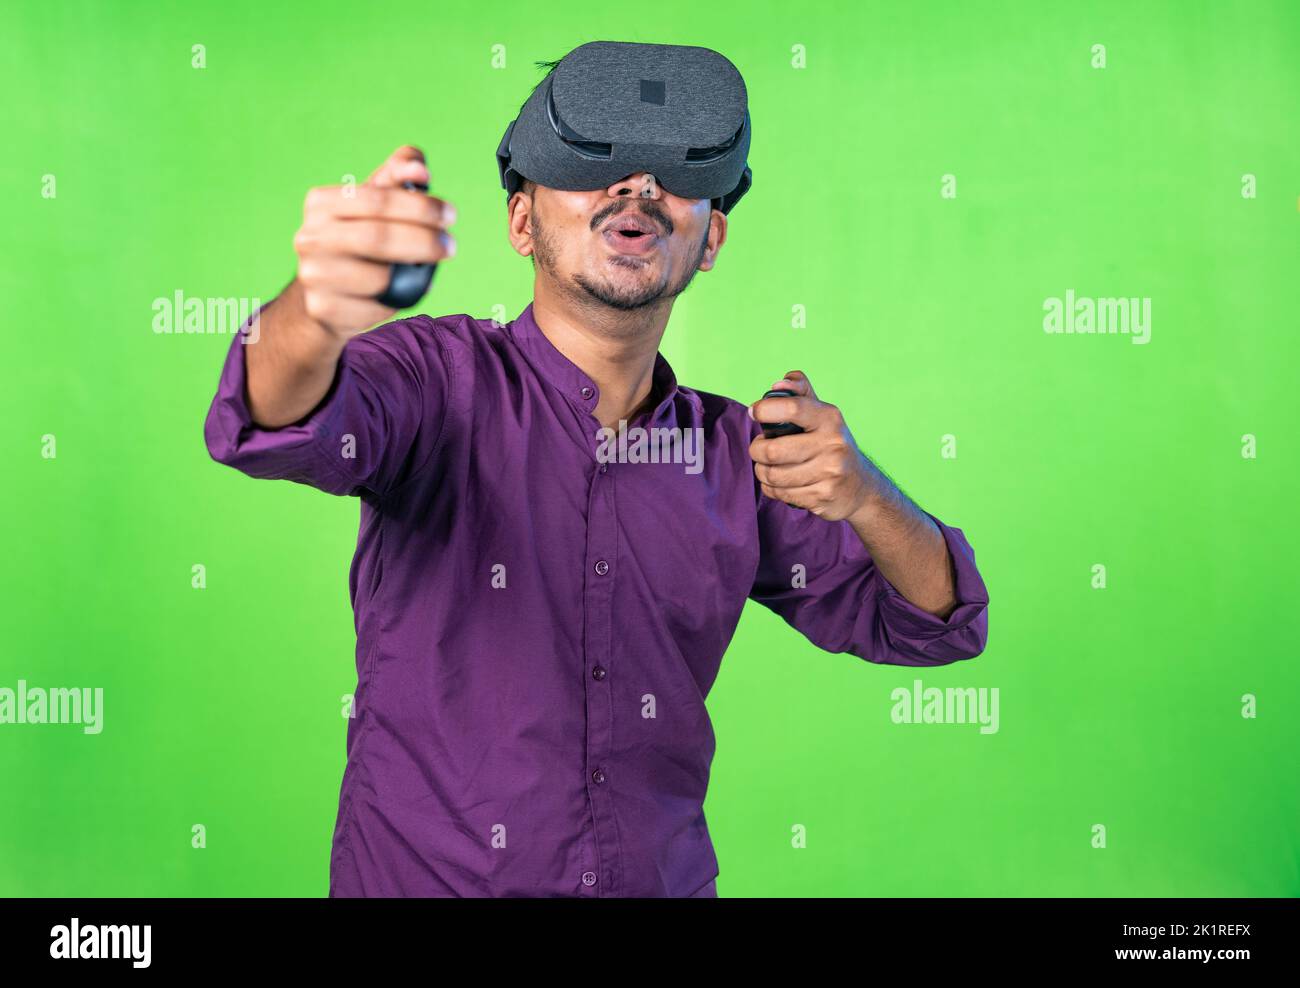 Joven emocionado con vr o auriculares de realidad virtual jugando videojuegos en metaverse utilizando joystick sobre fondo de pantalla verde - concepto de tecnología Foto de stock